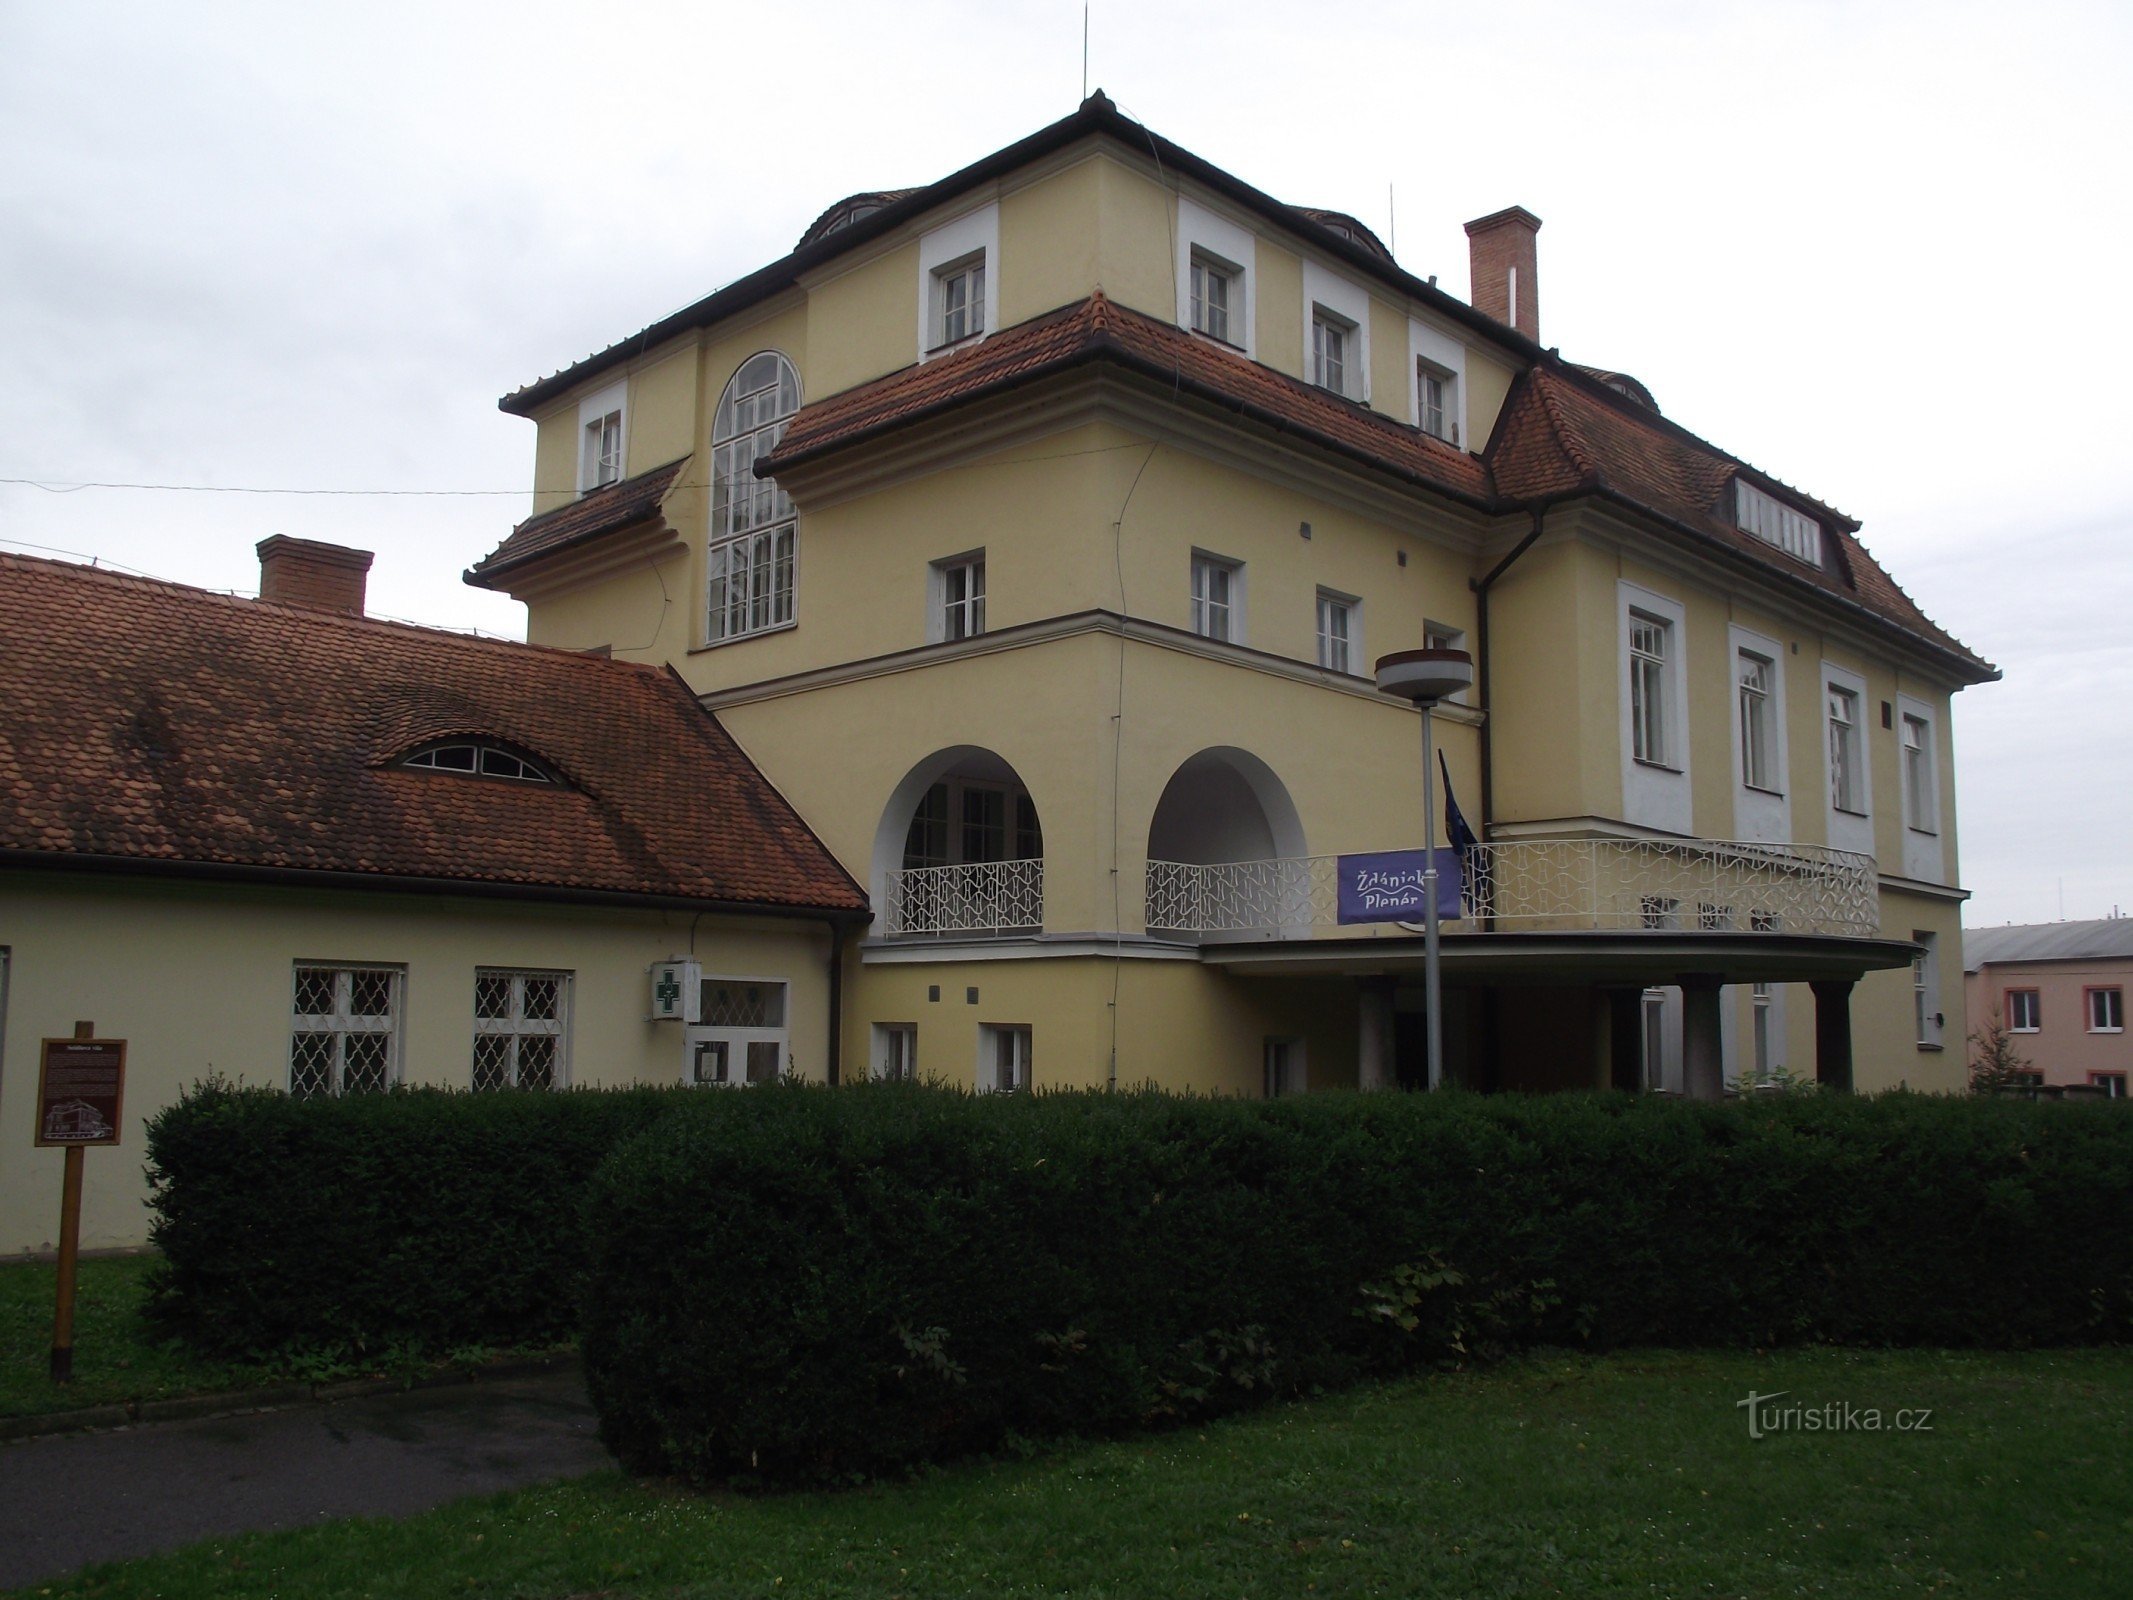 Ždánice - villa del castello (Seidl's / Loudon's).